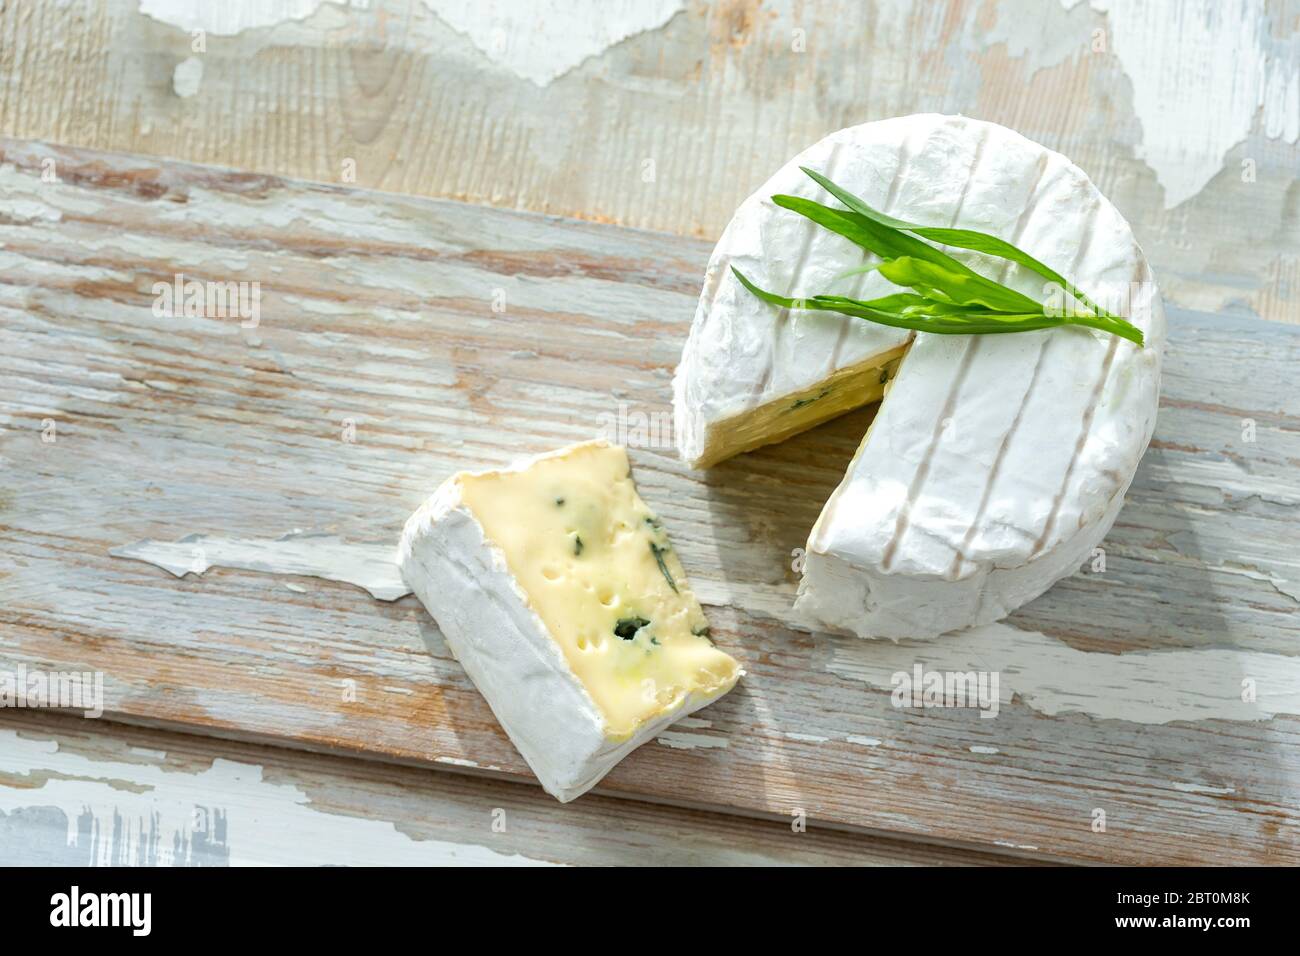 Bleu de Bresse est un fromage bleu de Bresse, ici, par la rouille, vue d'en haut sur un fond de bois. Banque D'Images